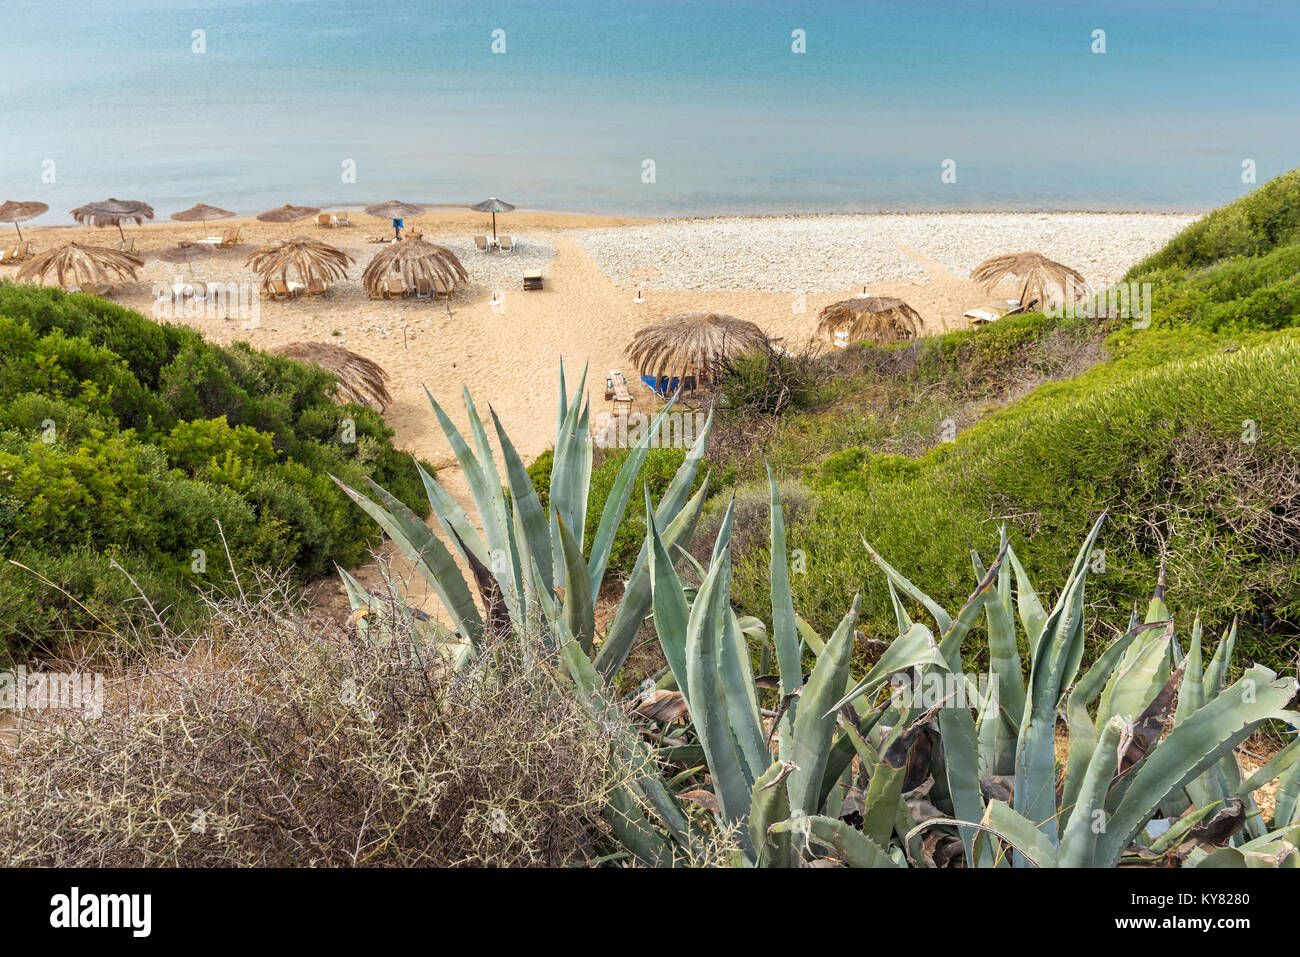 Plage de Gerakas, une des plus belles plages de Zakynthos pour ses eaux turquoises. La Grèce. Banque D'Images